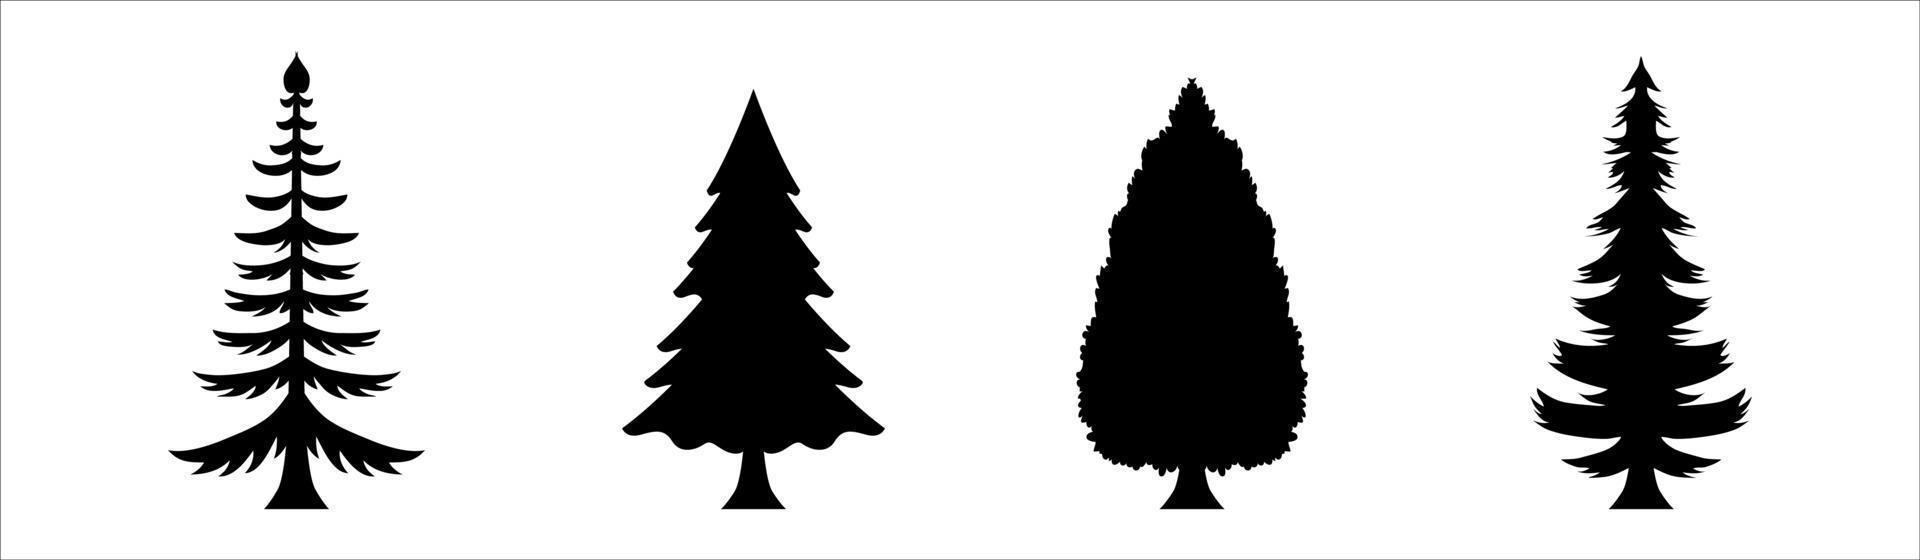 verschiedene Weihnachtsbaum-Silhouette vektor